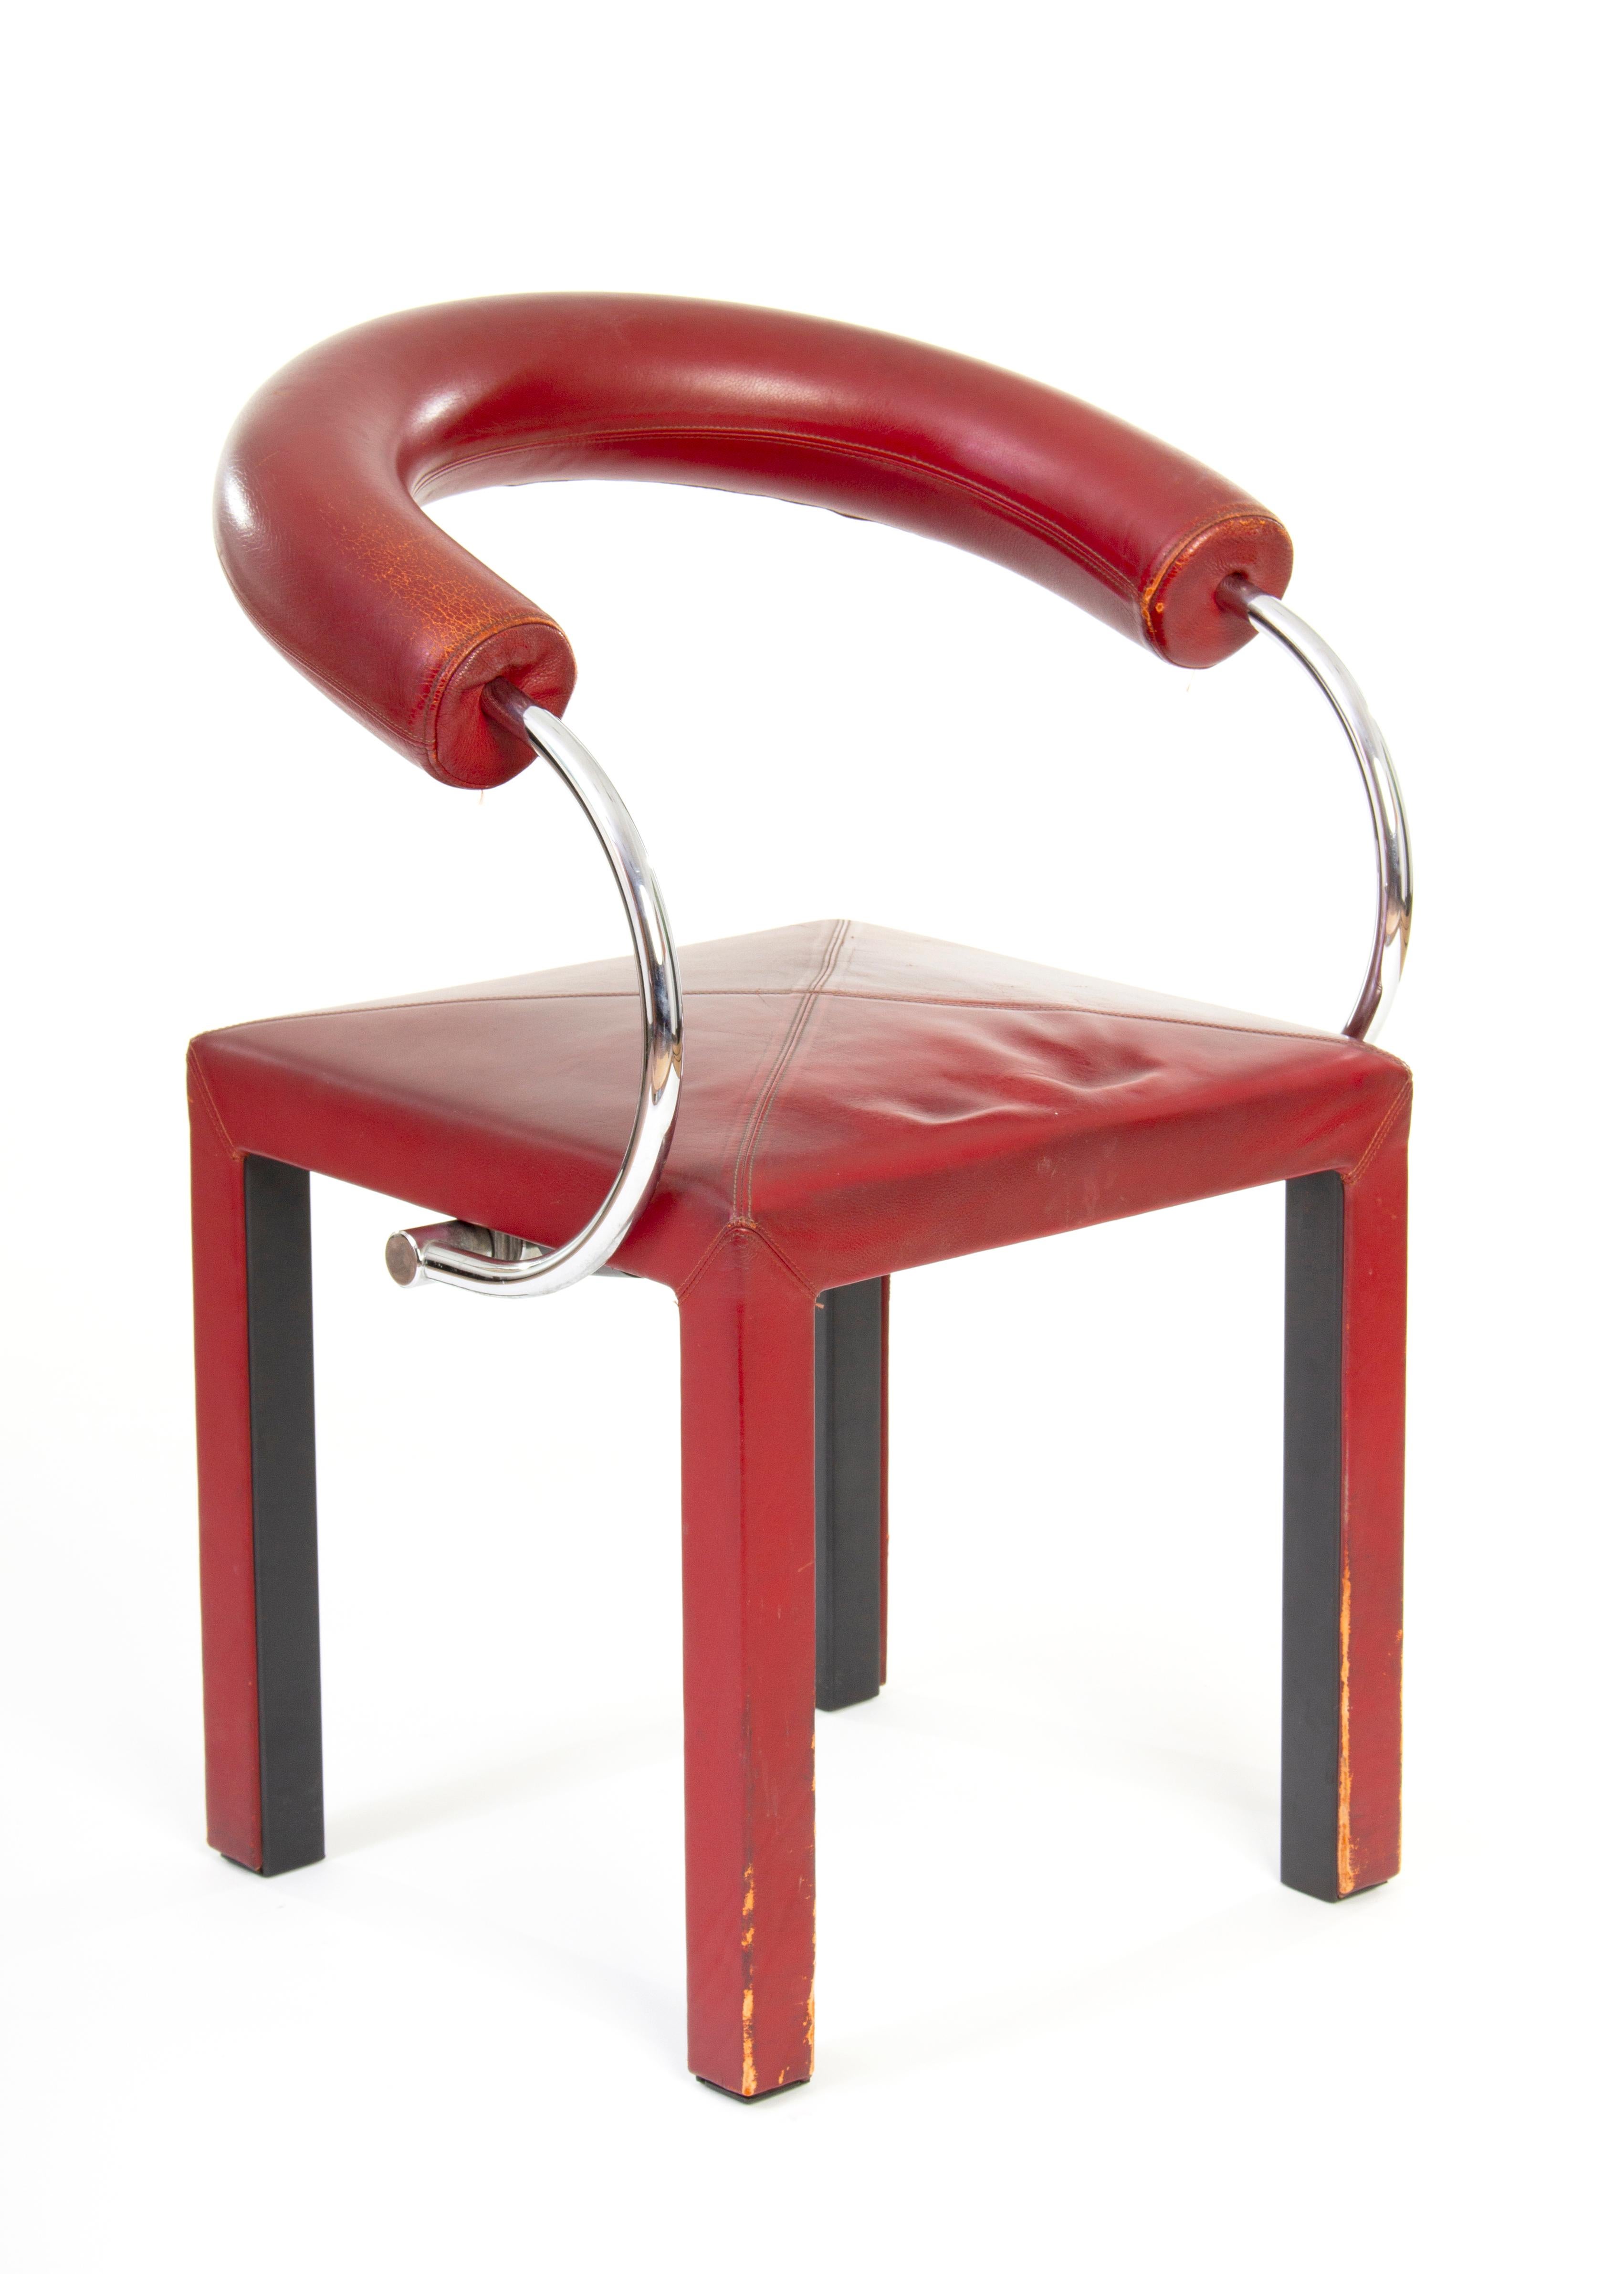 Ensemble de fauteuils B&B Italia, conçu par Paolo Piva.
Les ensembles sont uniques en raison de leur dossier incurvé.
Les couvertures sont en cuir rouge et ont besoin d'être revernies.
